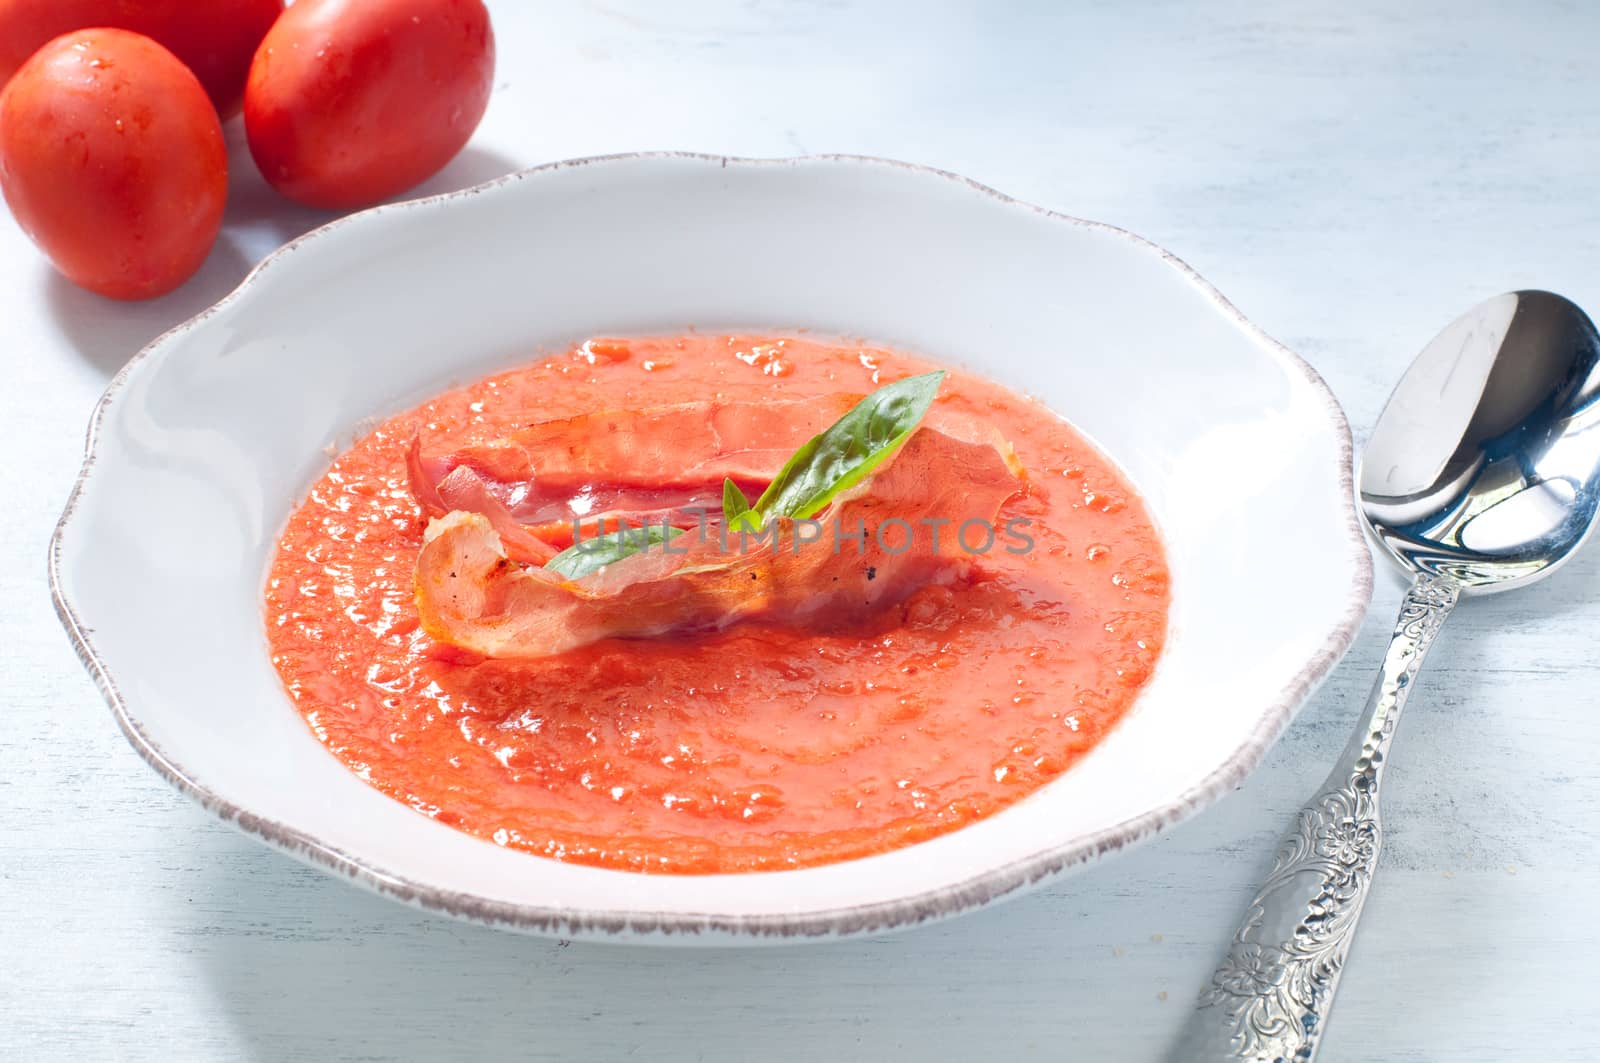 Cold tomato soup with crispy prosciutto